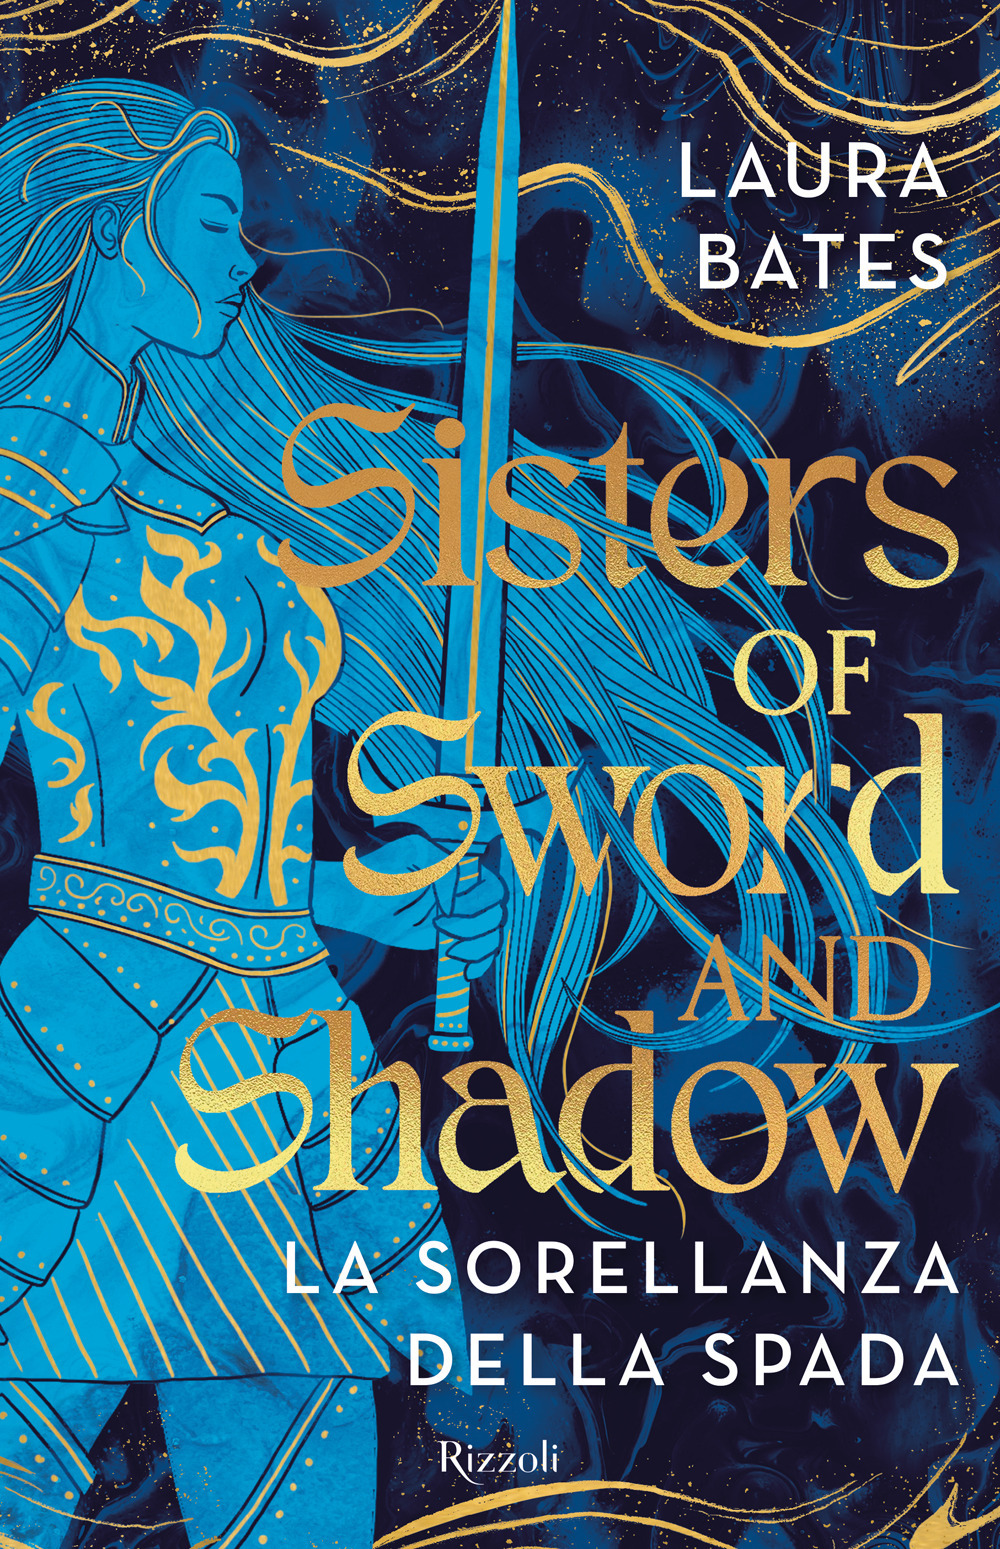 Sisters of Sword and Shadow. La sorellanza della spada